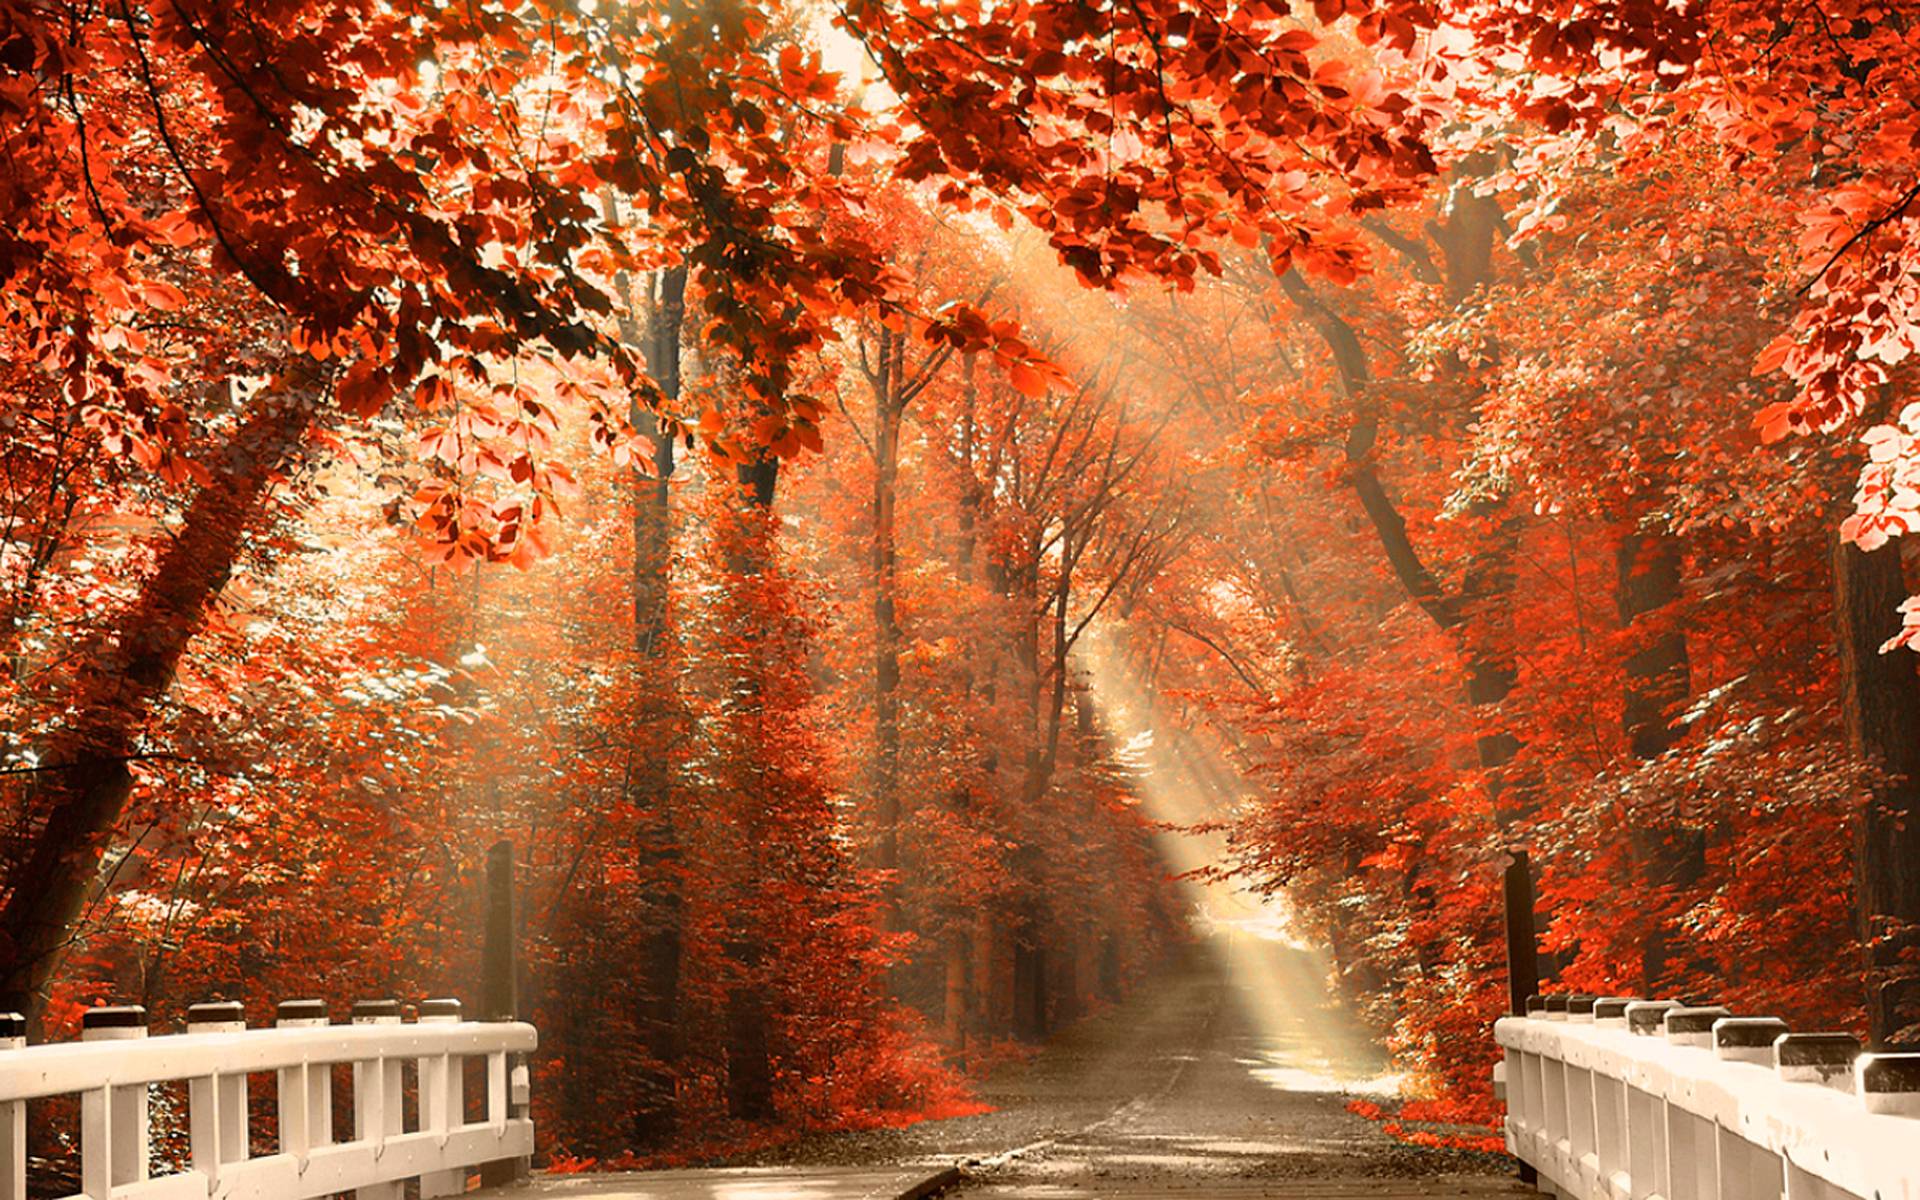 Hình nền thiên nhiên mùa thu là sự kết hợp hoàn hảo giữa sắc đỏ vàng của lá và những cánh đồng rực rỡ sắc màu. Với hình ảnh này, bạn sẽ cảm thấy như mình đang đi dạo trong một vùng quê yên bình và thời tiết se se lạnh đặc trưng của mùa thu.